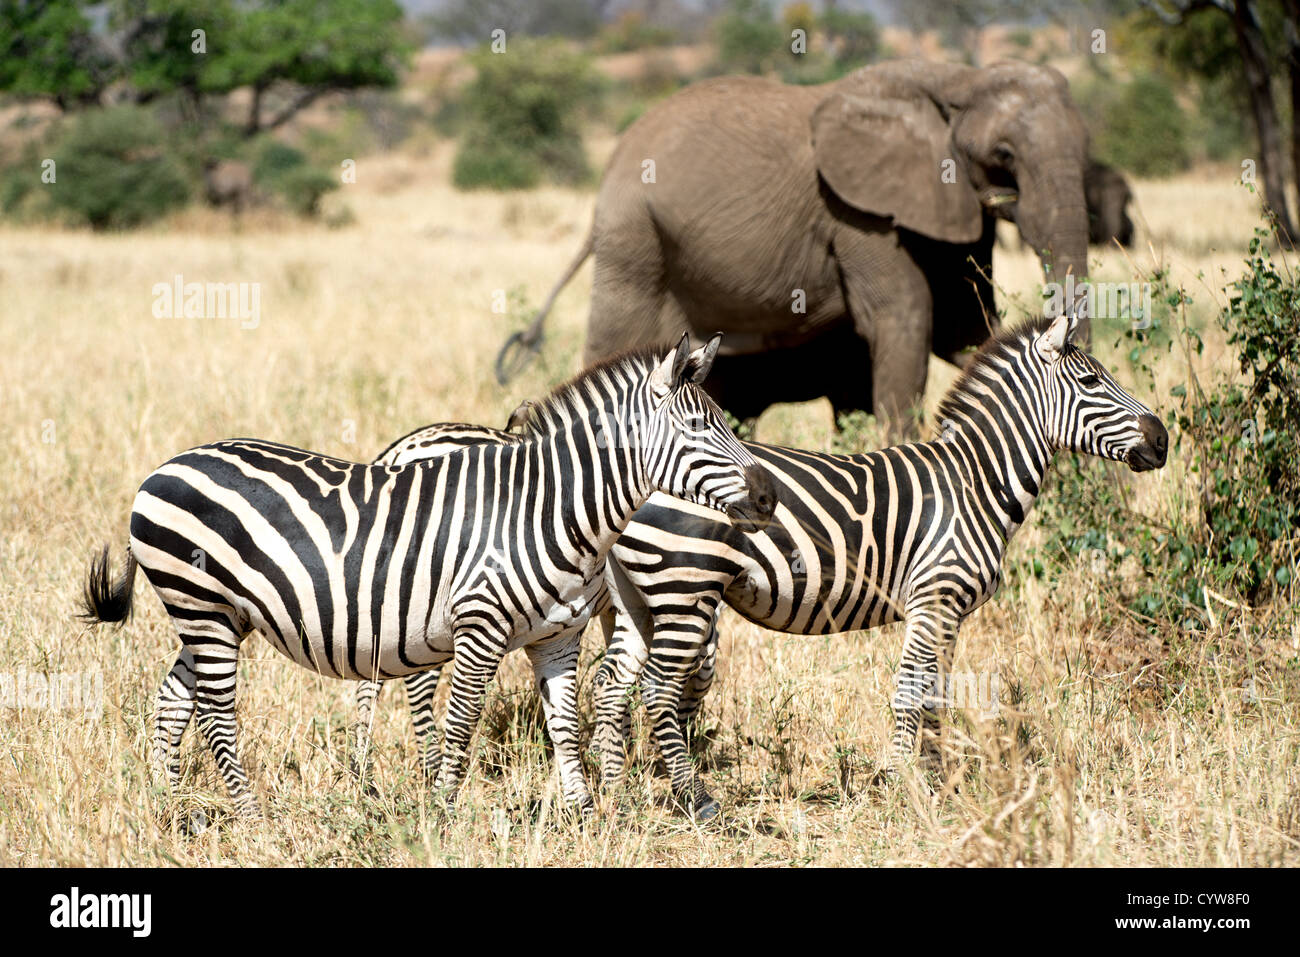 Der Tarangire National Park, Tansania - Zebras stand wachsam im Vordergrund, mit Elefanten im Hintergrund in der Tarangire National Park im Norden von Tansania, nicht weit von den Ngorongoro Krater und die Serengeti. Stockfoto